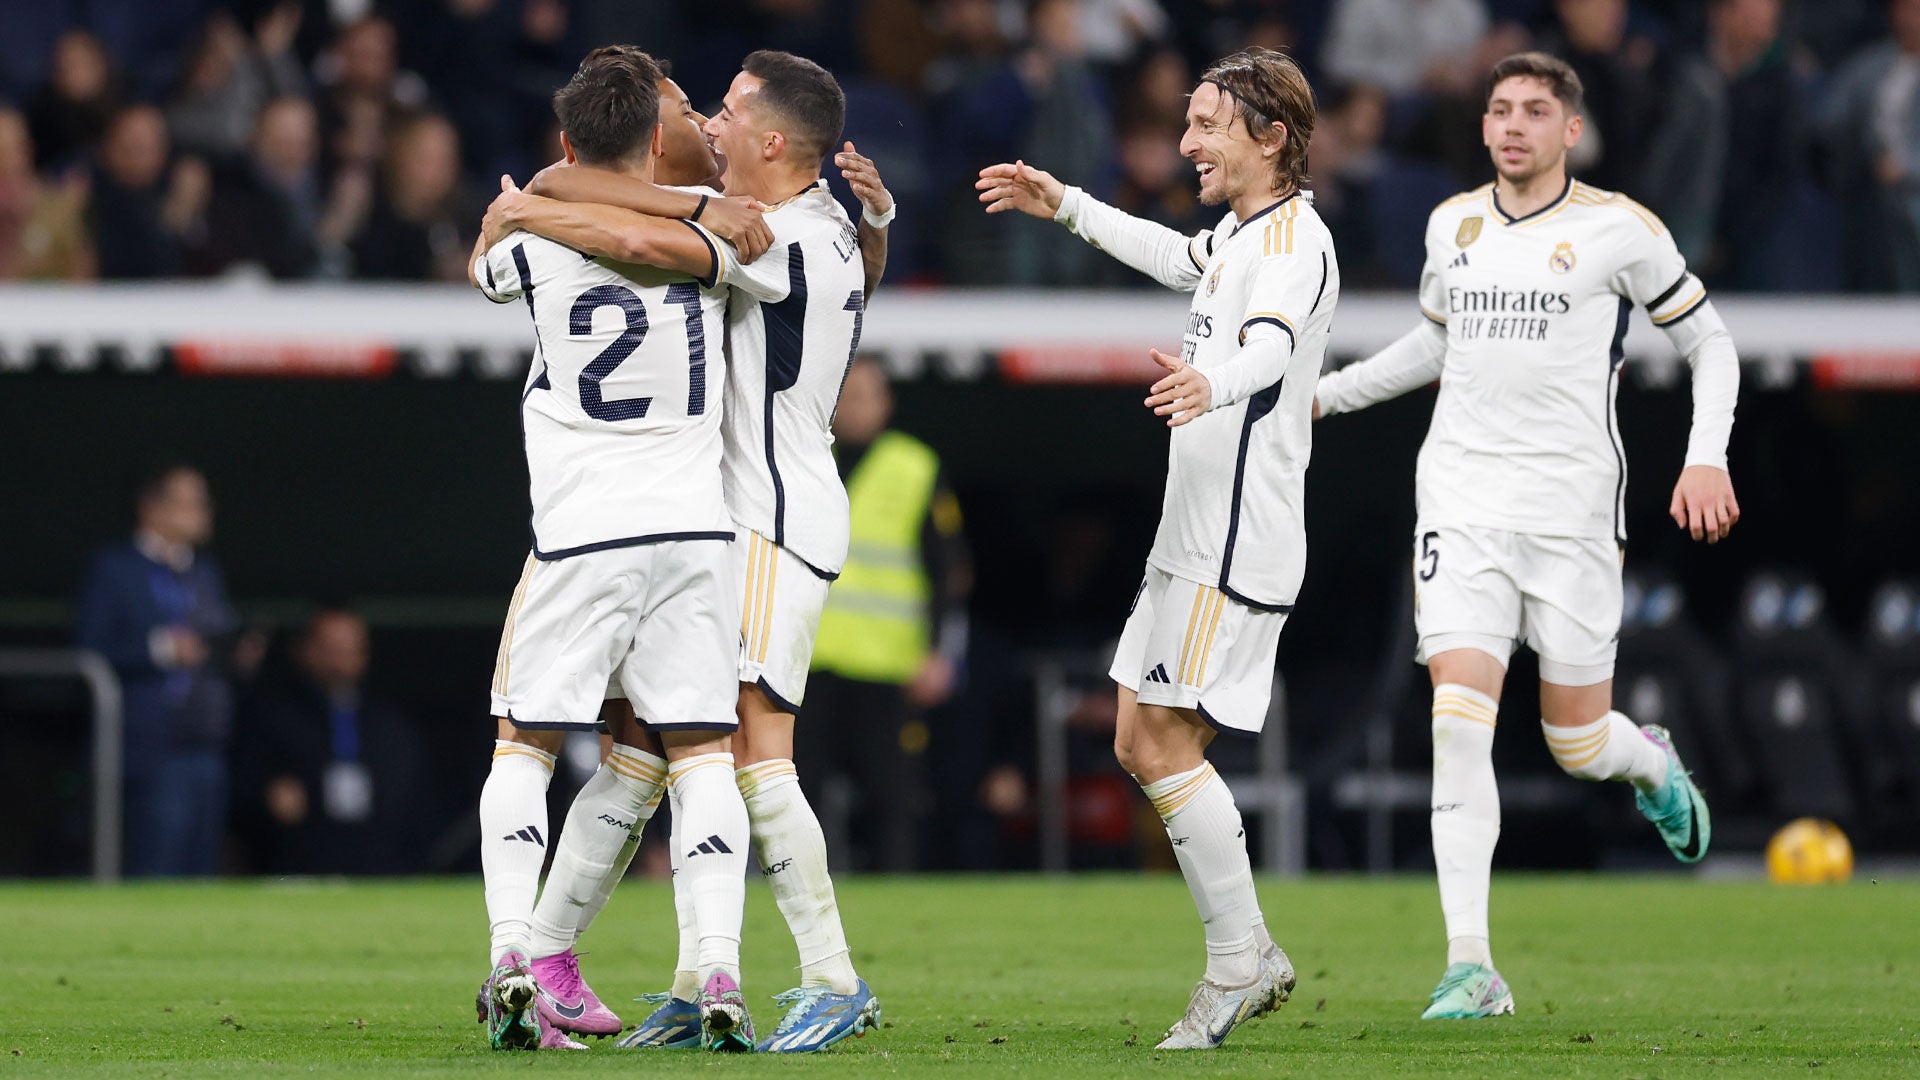 Alavés-Real Madrid: a despedir el año con victoria